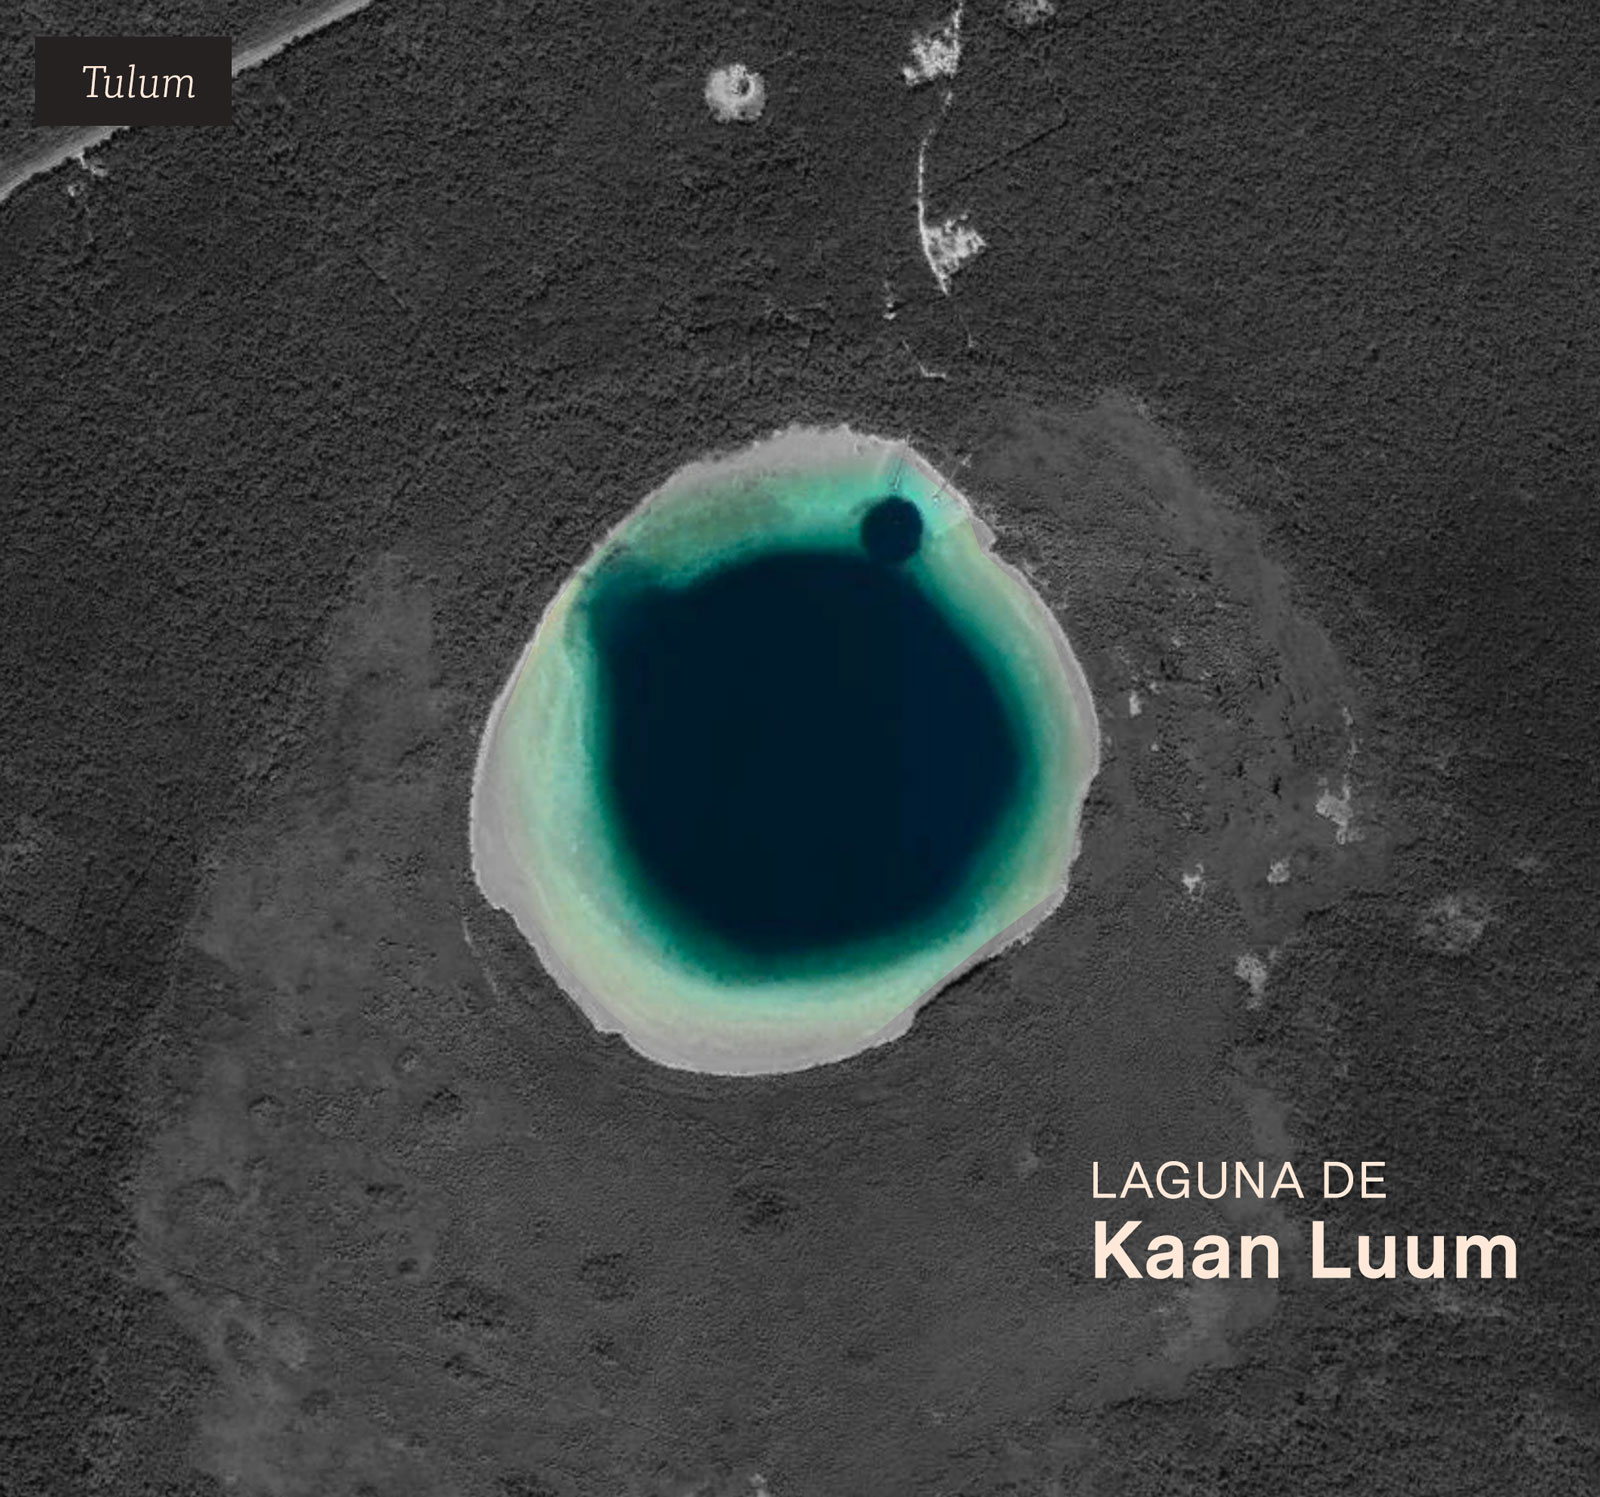 A unos 12 kilómetros de Tulum se ubica la Laguna de Kaan Luum, la cual posee un
                            cenote interior en sus aguas. Aquí se pretende desarrollar un proyecto ecoturístico,
                            cuya
                            sociedad cooperativa tiene al frente al hermano del alcalde